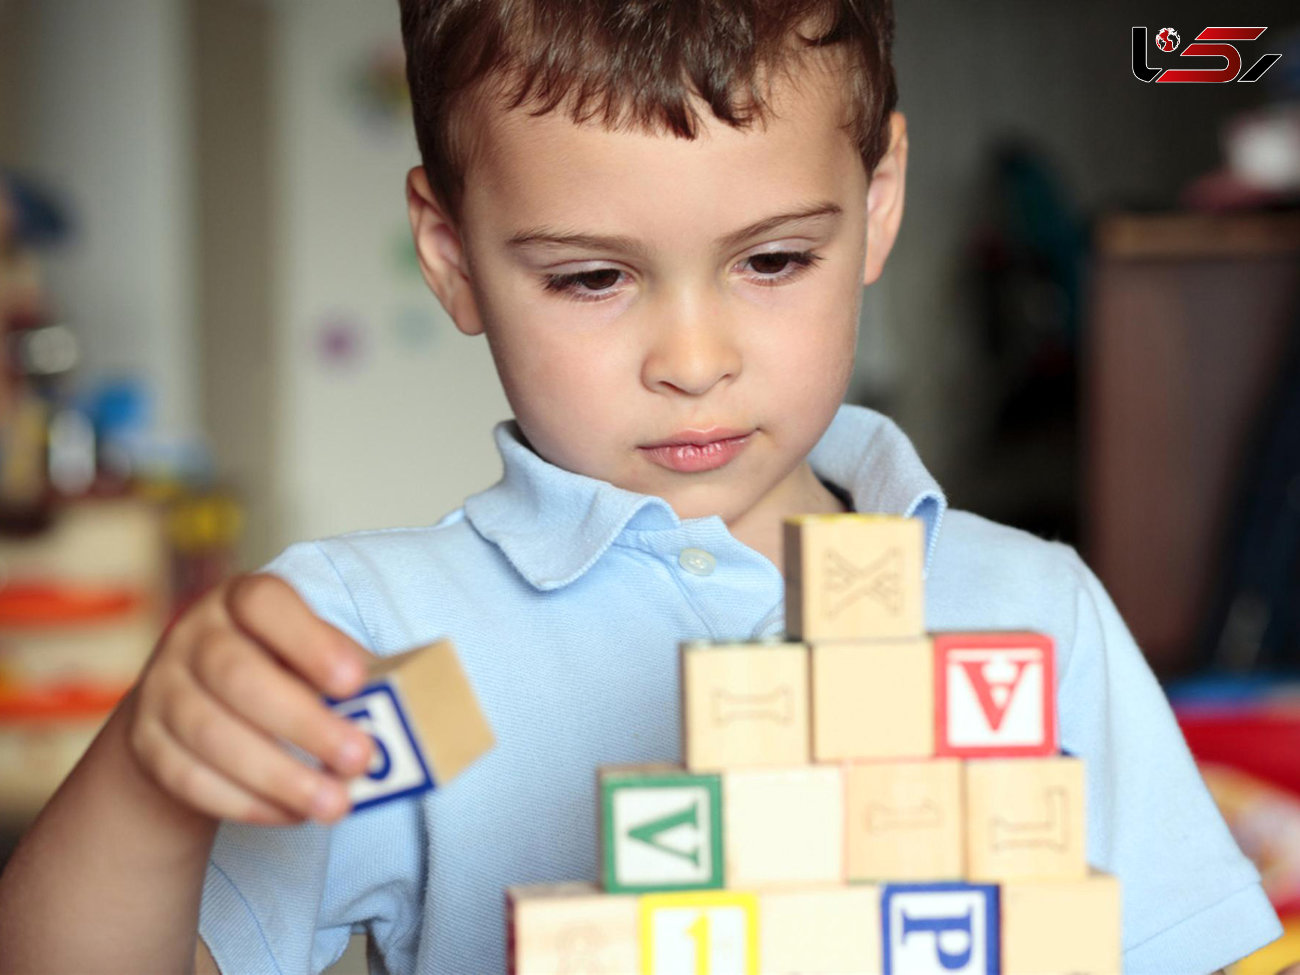 کمک به مشکلات کودکان اوتیسمی با سیستم آموزشی دوزبانه
